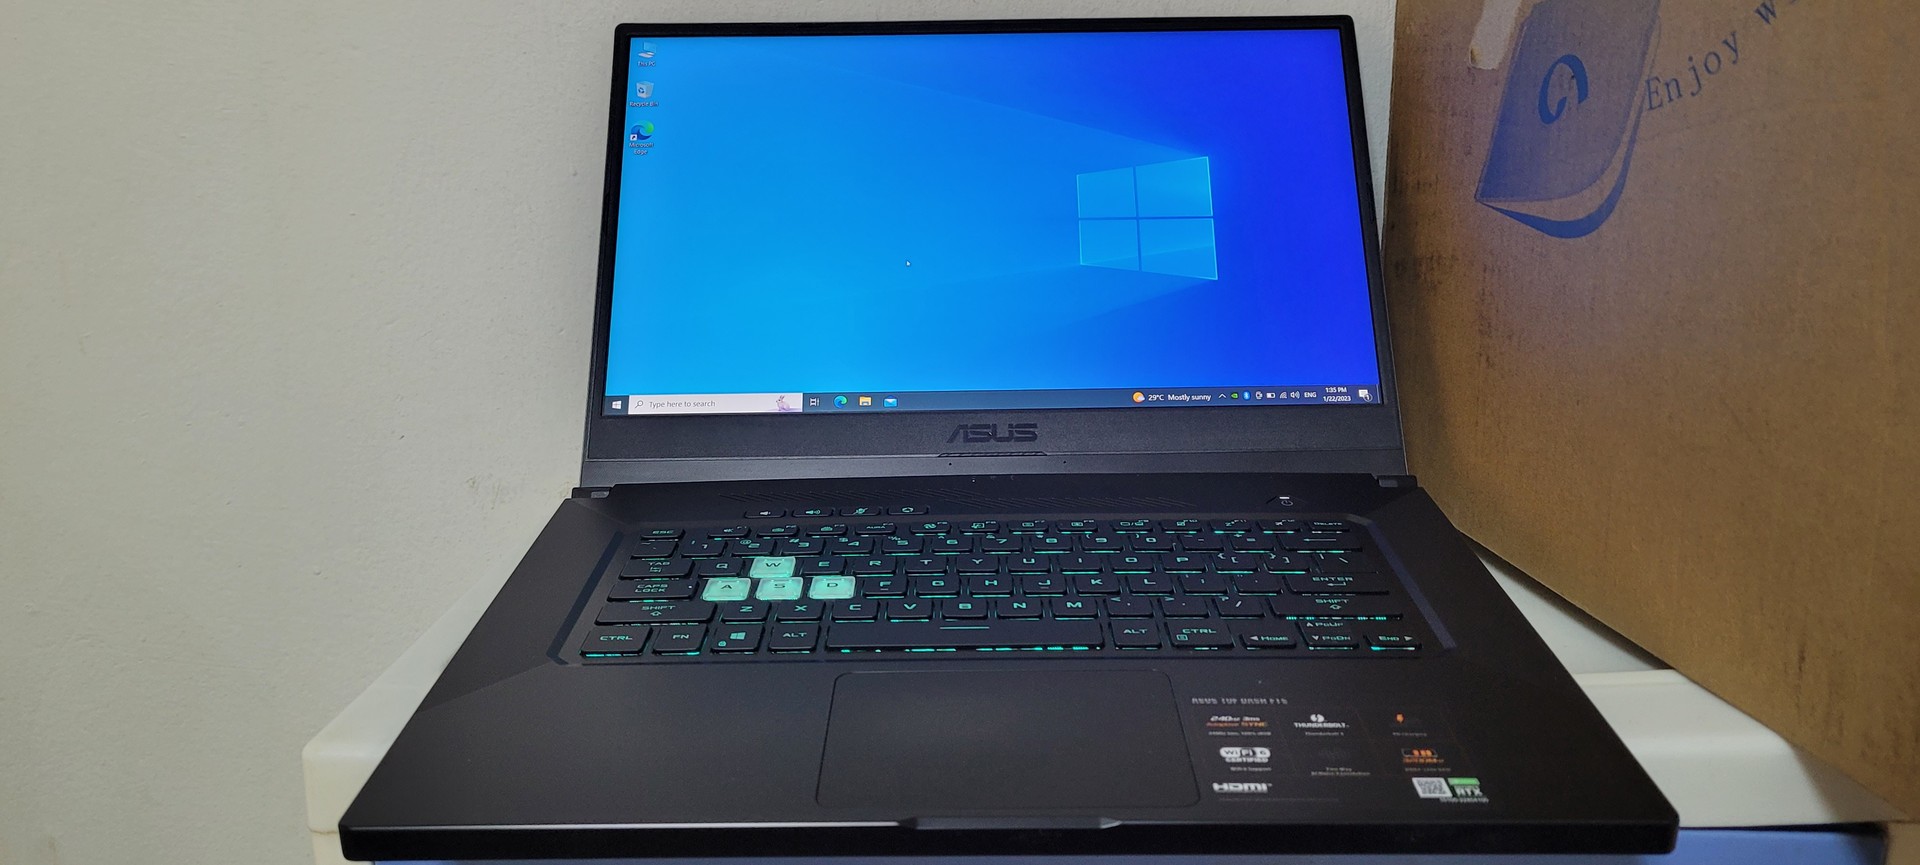 computadoras y laptops - Asus TUF Core i7 11th Gen Ram 24gb ddr4 Disco 1000gb SSD RTX 3070 8gb Dedicada